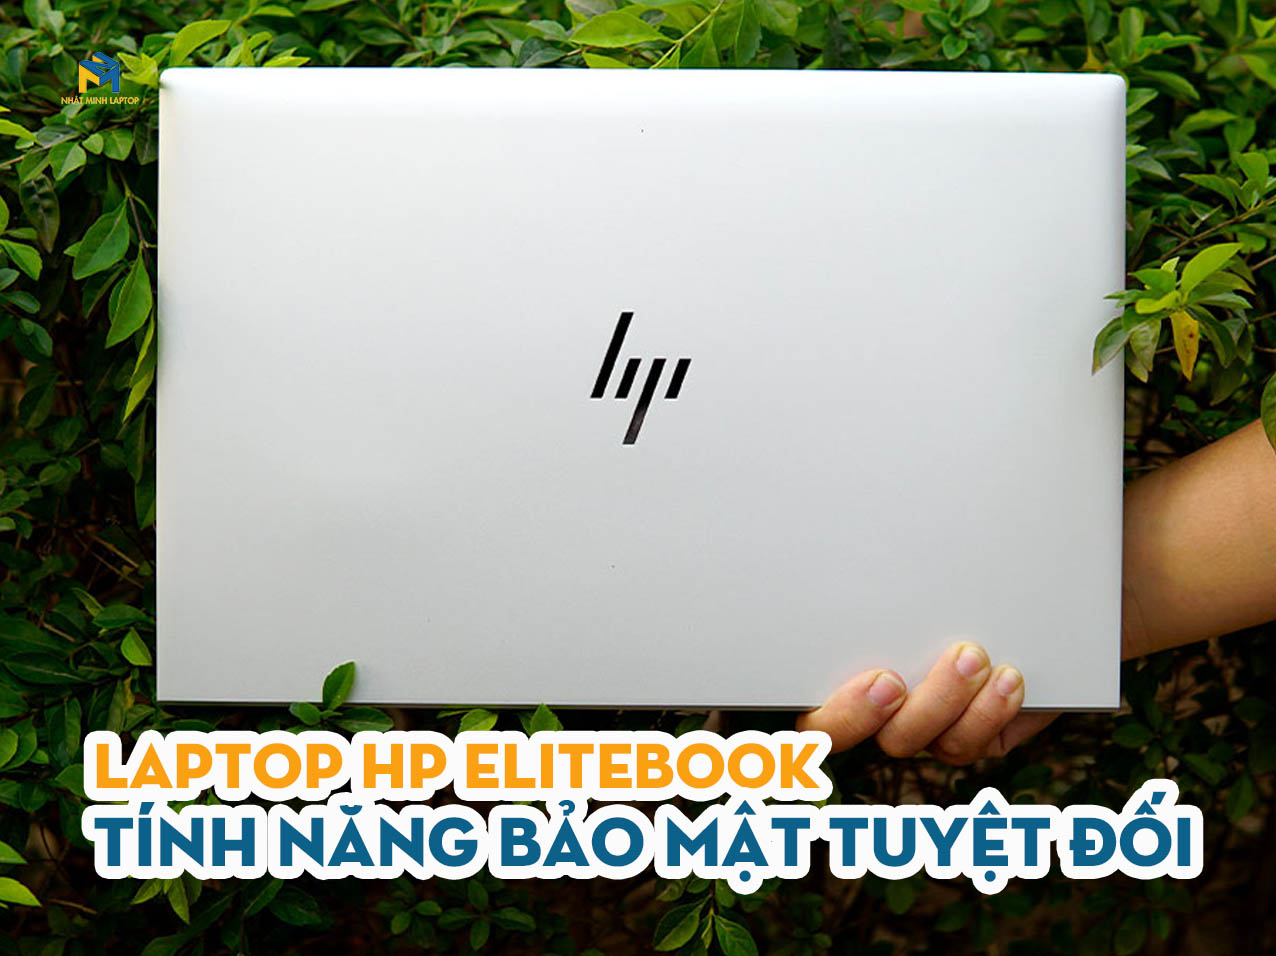 laptop hp elitebook i5 cũ 